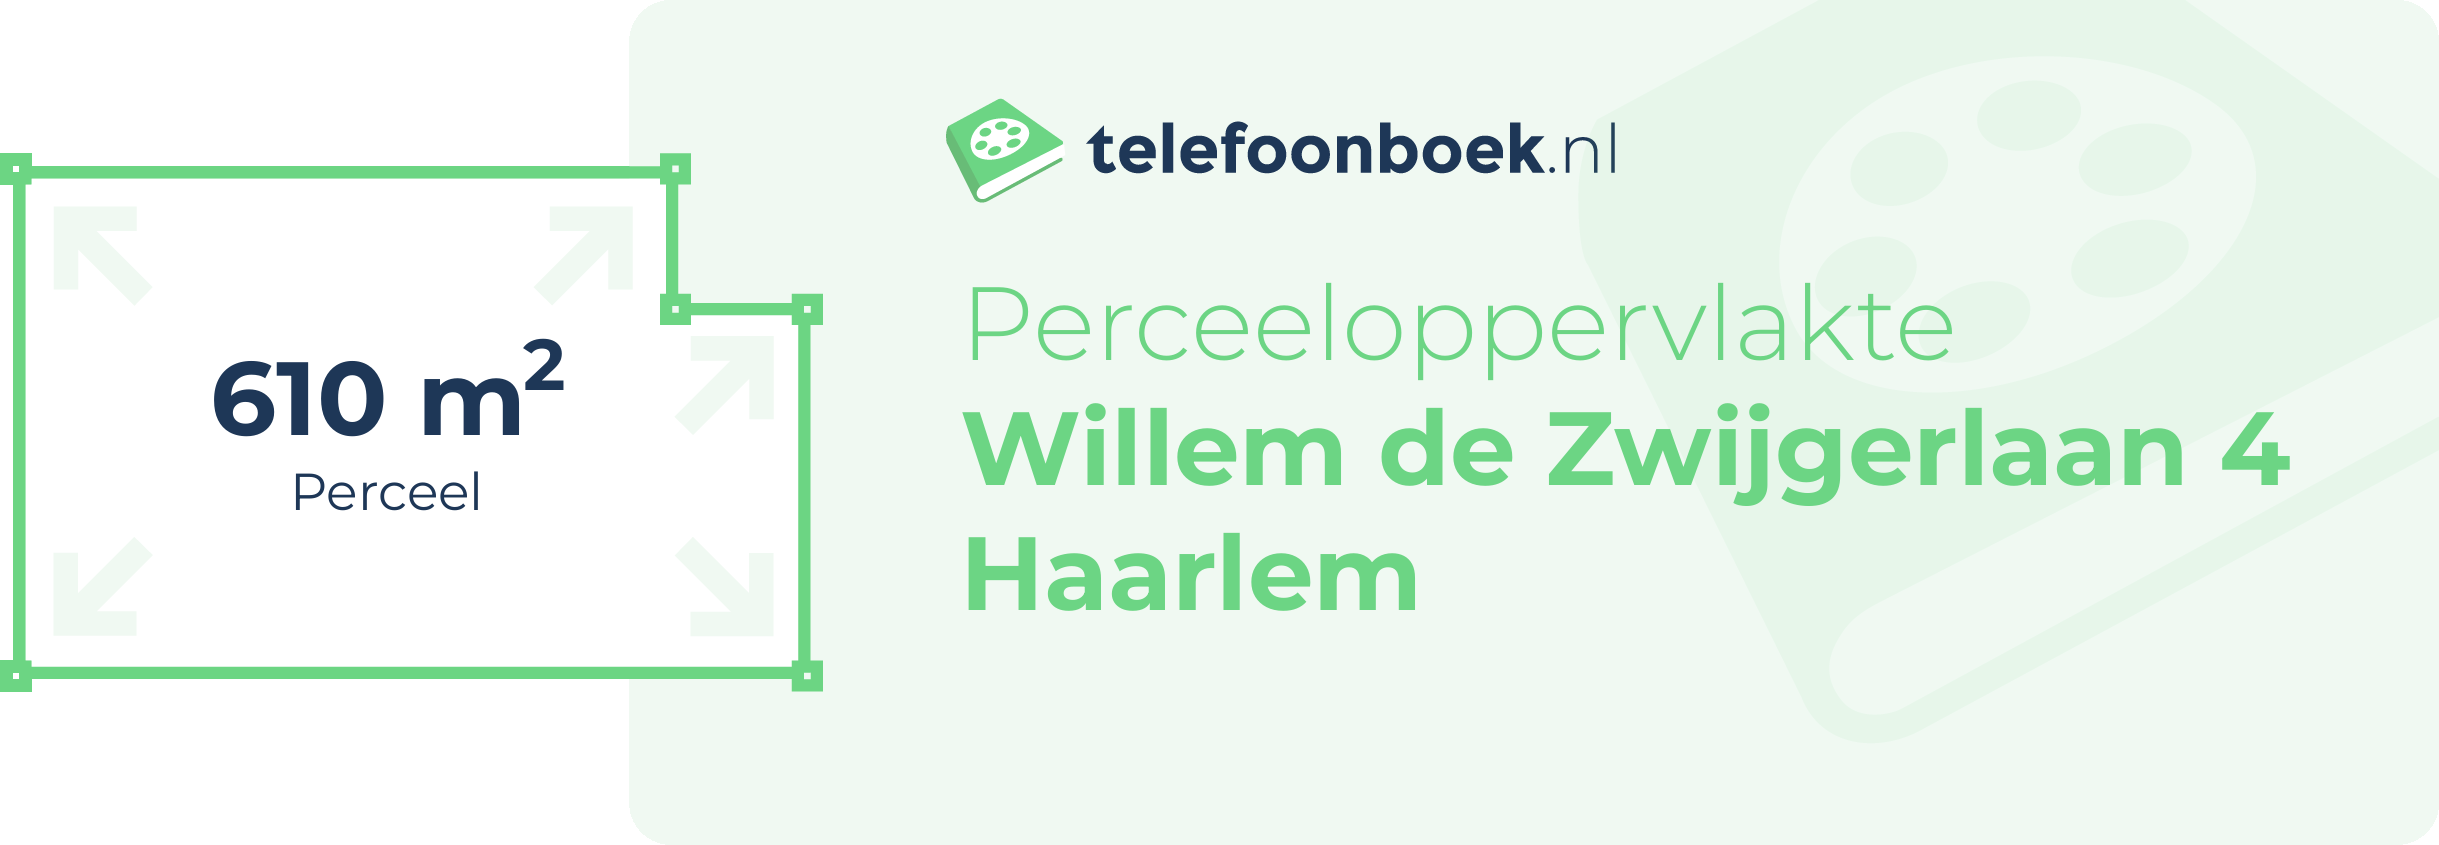 Perceeloppervlakte Willem De Zwijgerlaan 4 Haarlem